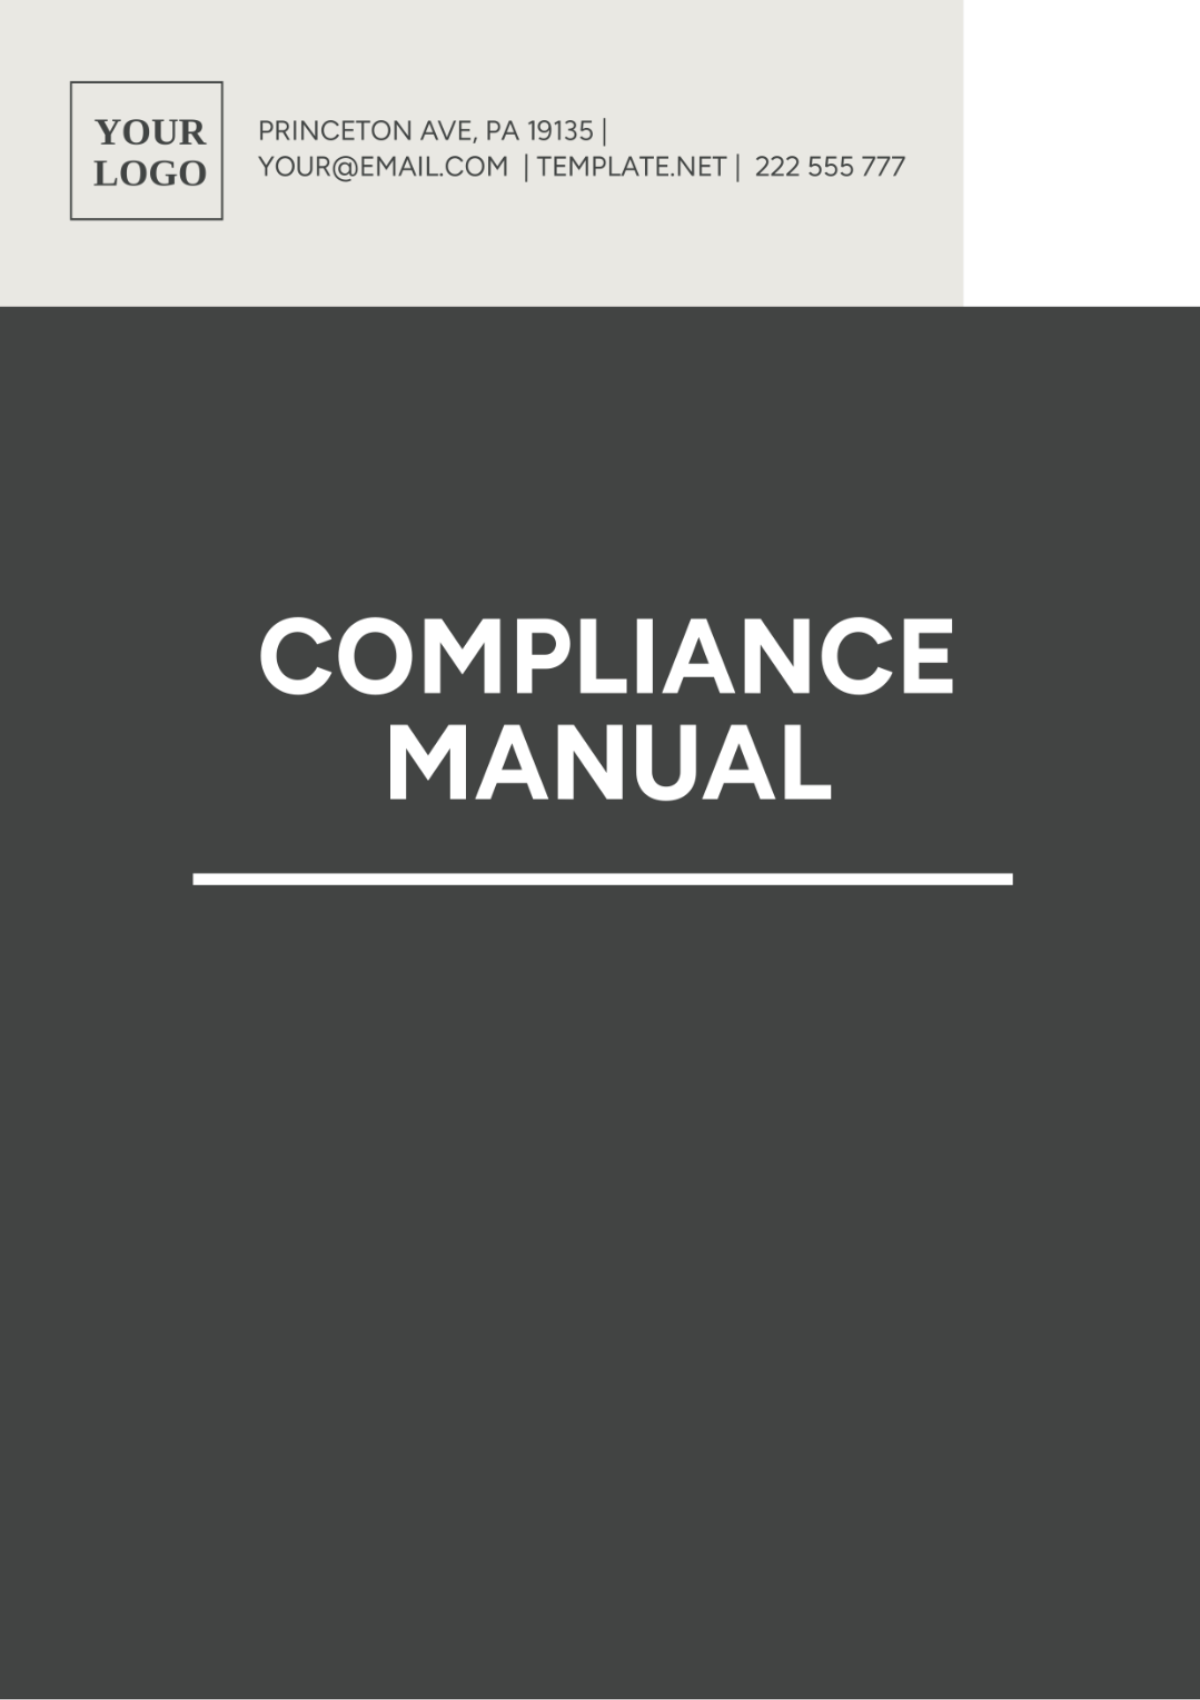 Compliance Manual Template